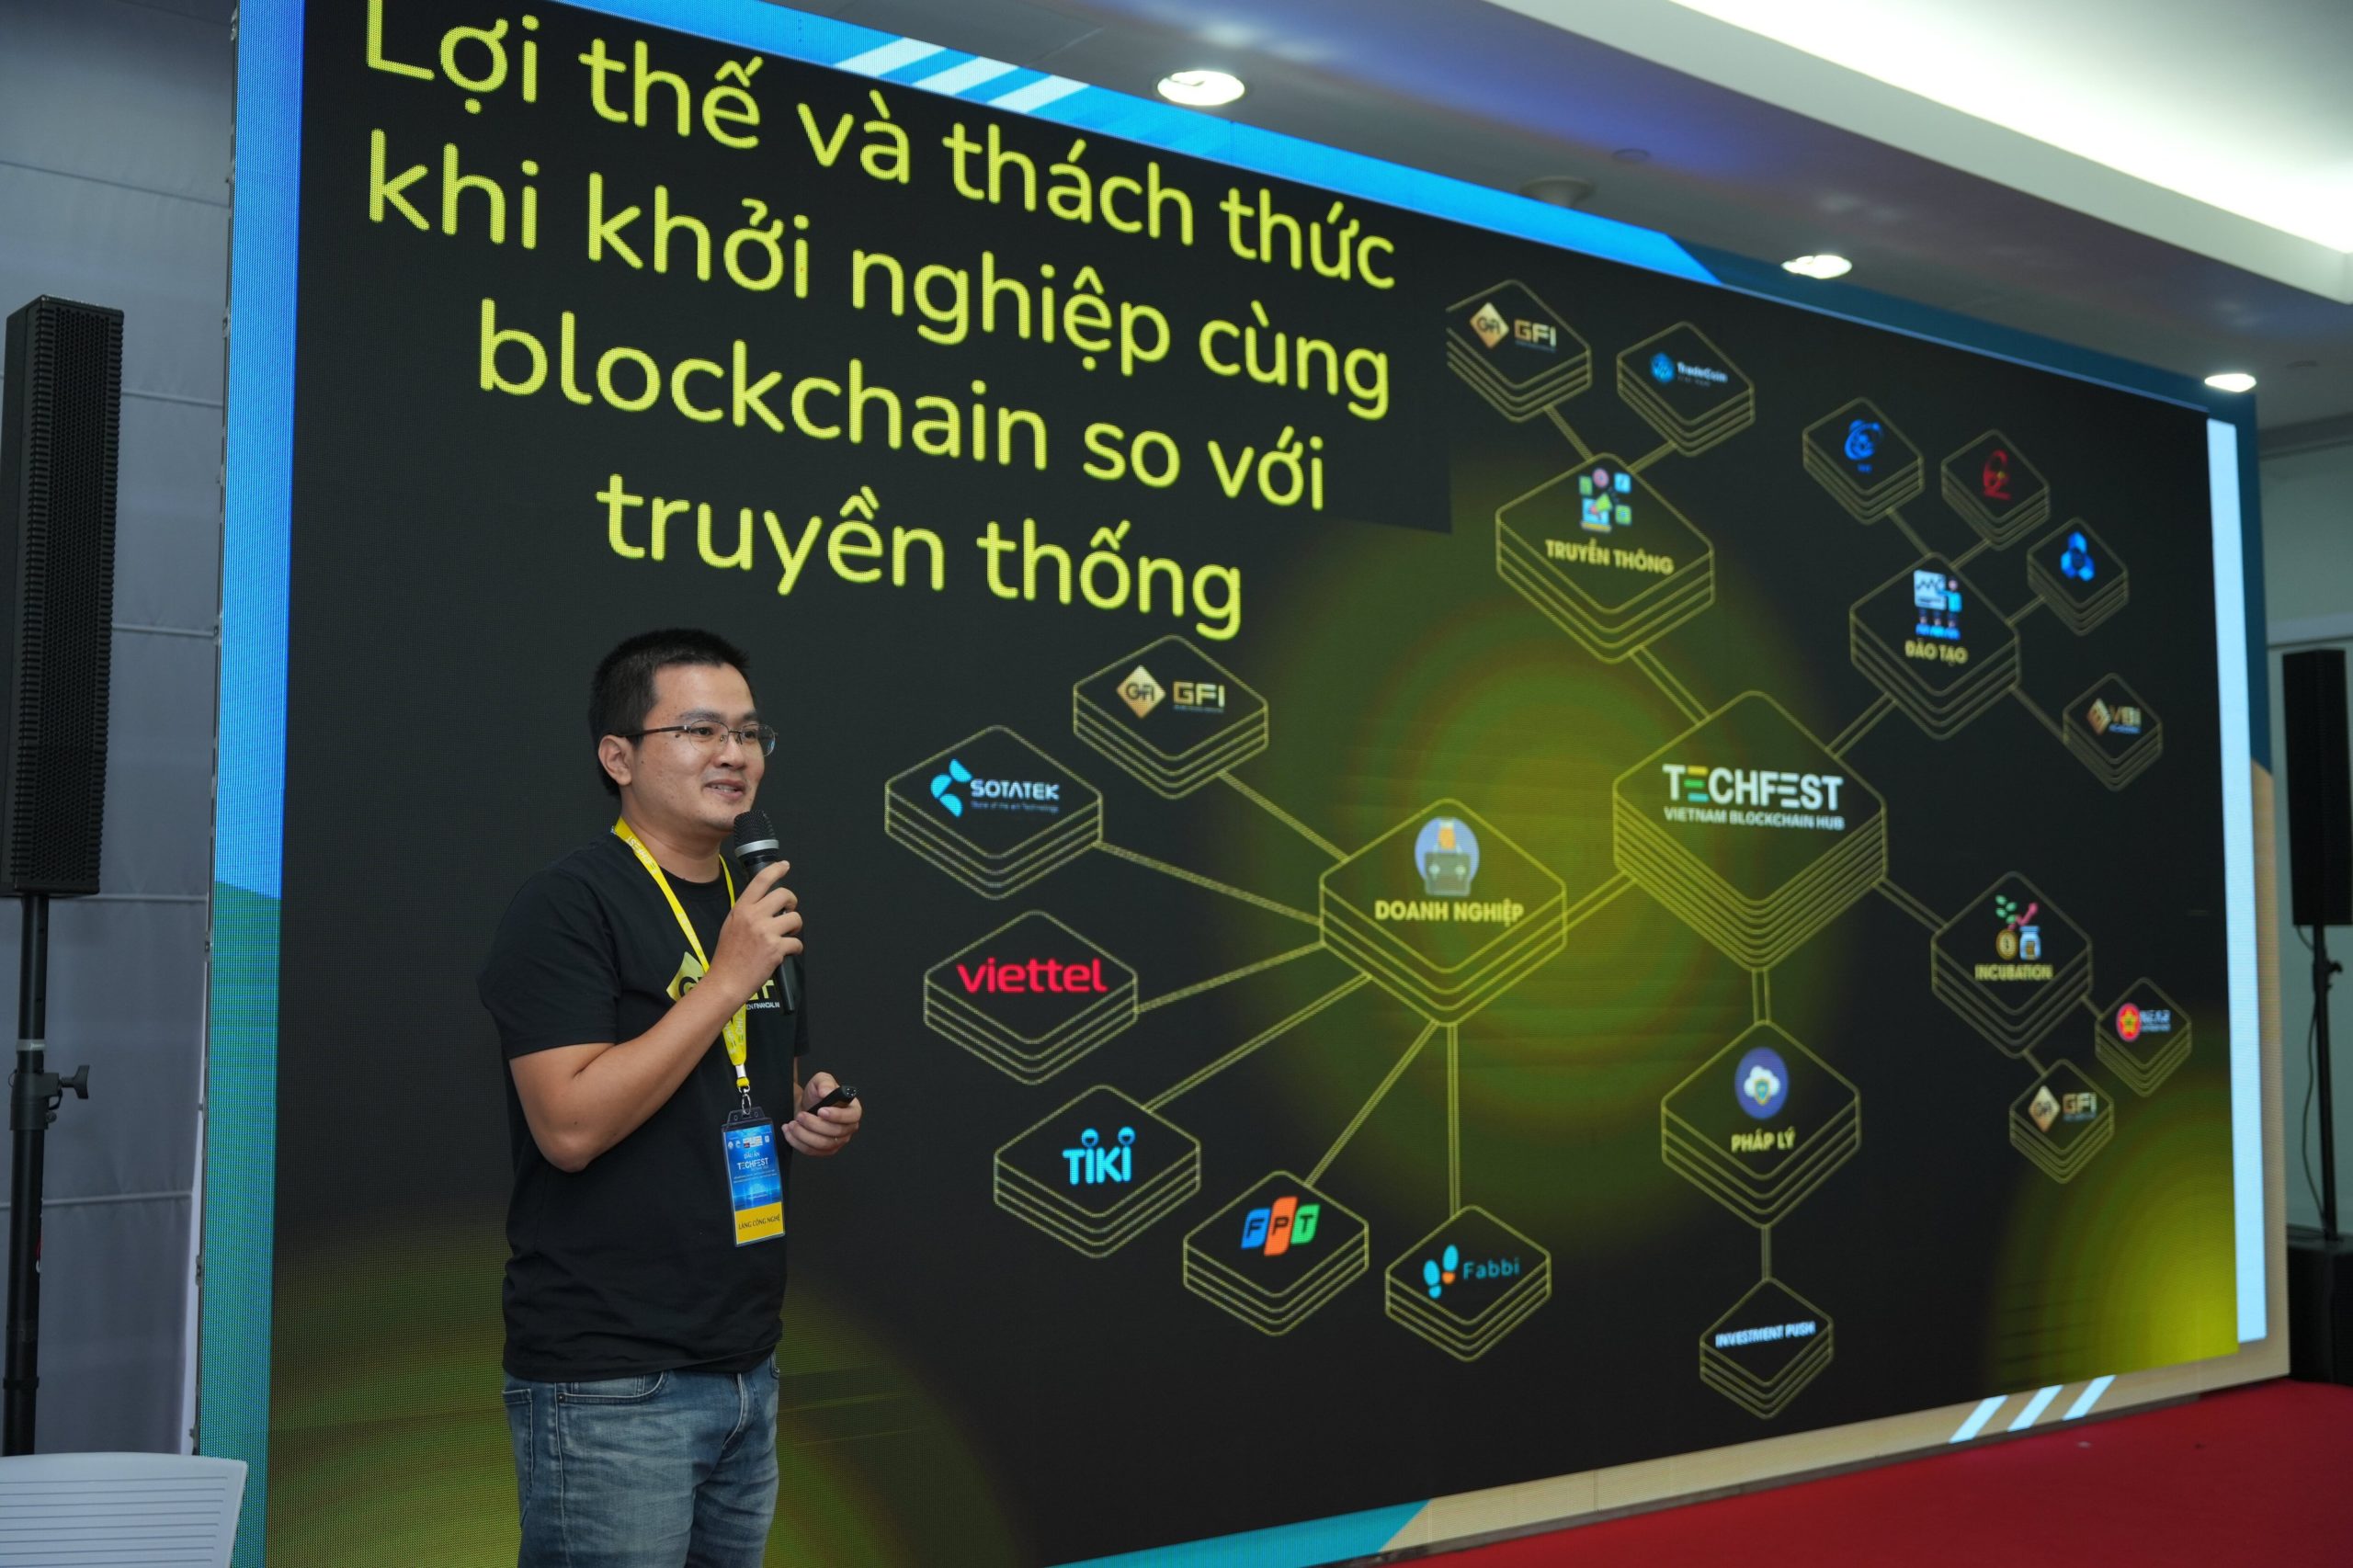 TS Thạnh chia sẻ về lợi thế khi khởi nghiệp cùng blockchain